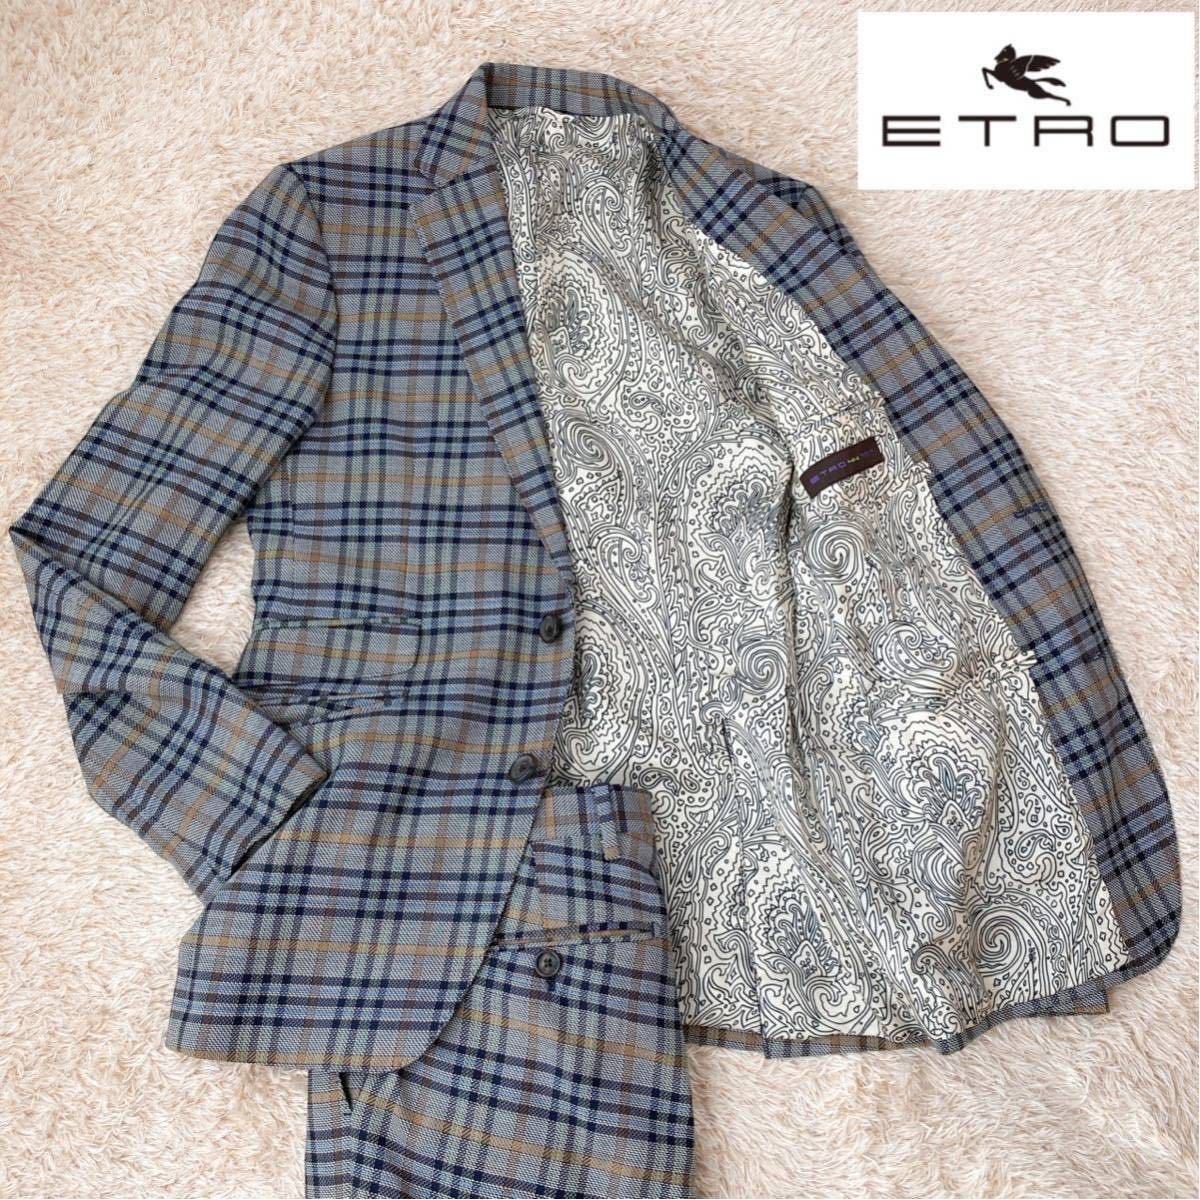 ヤフオク! -「etro エトロ スーツ」(スーツ) (メンズファッション)の 